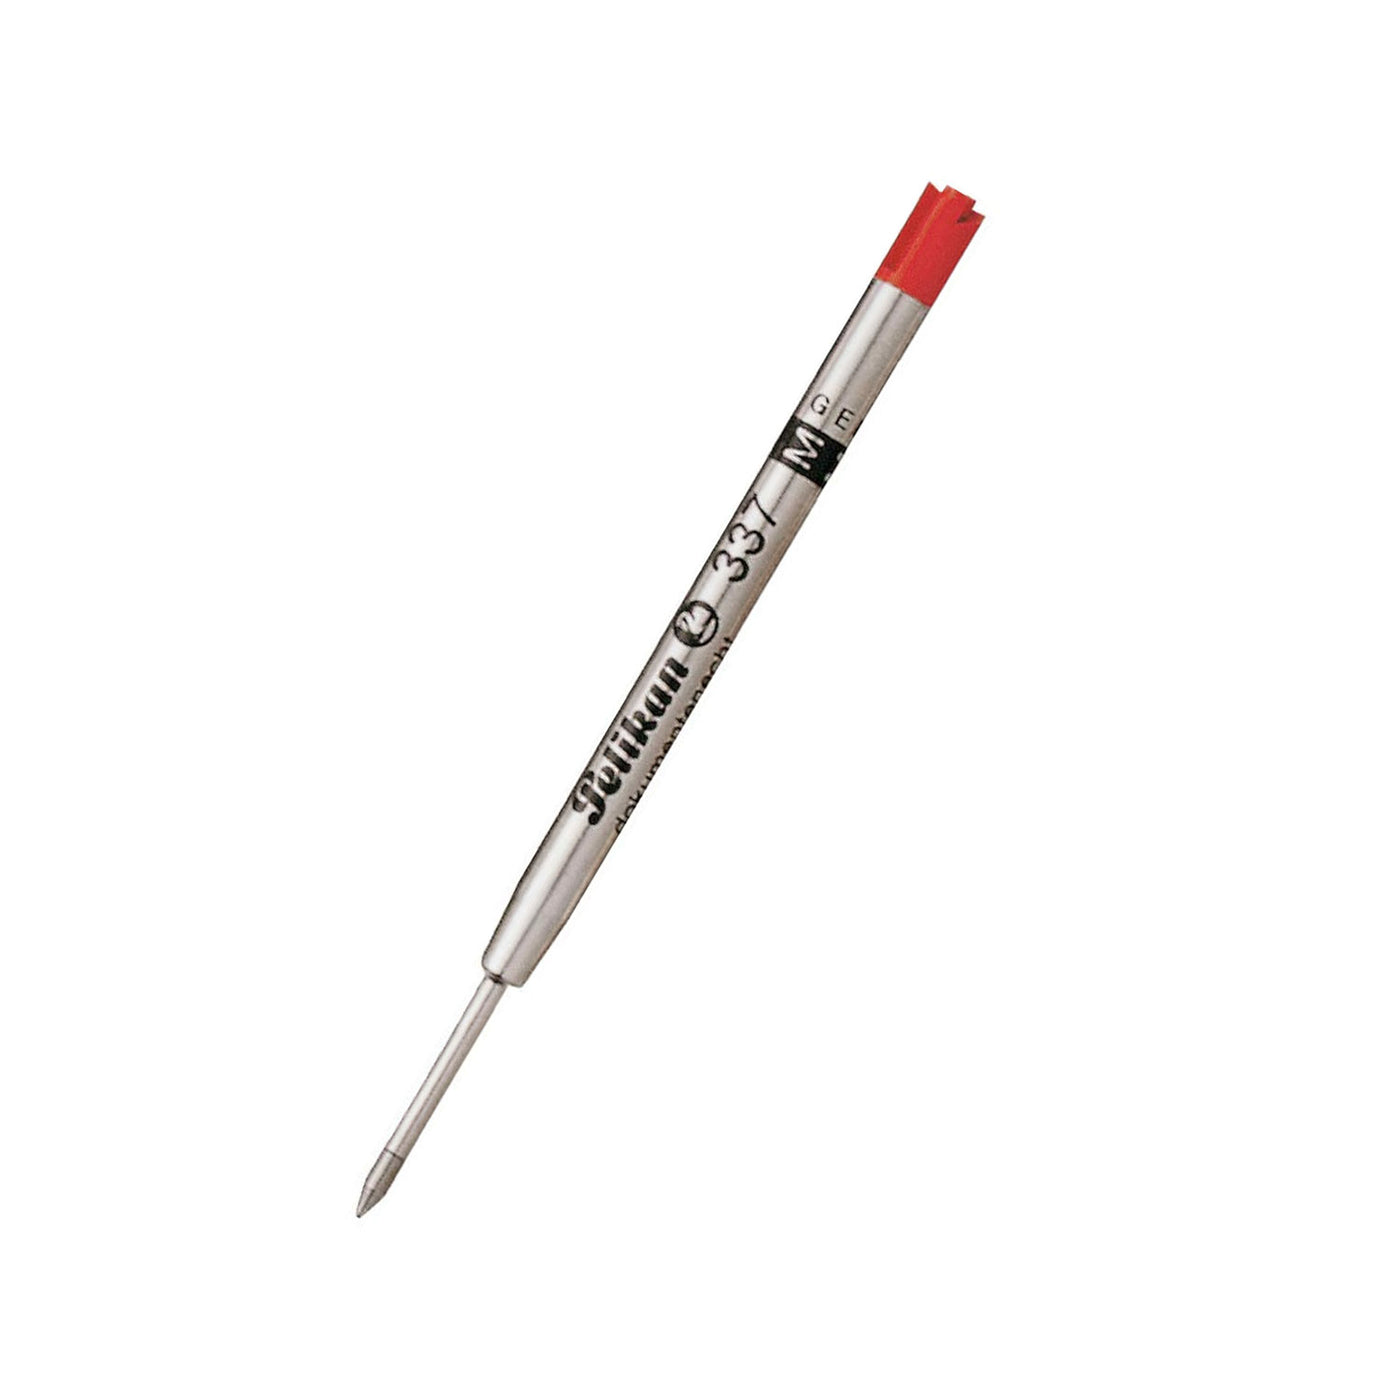 Pelikan 337 Ball Pen Medium Refill Red